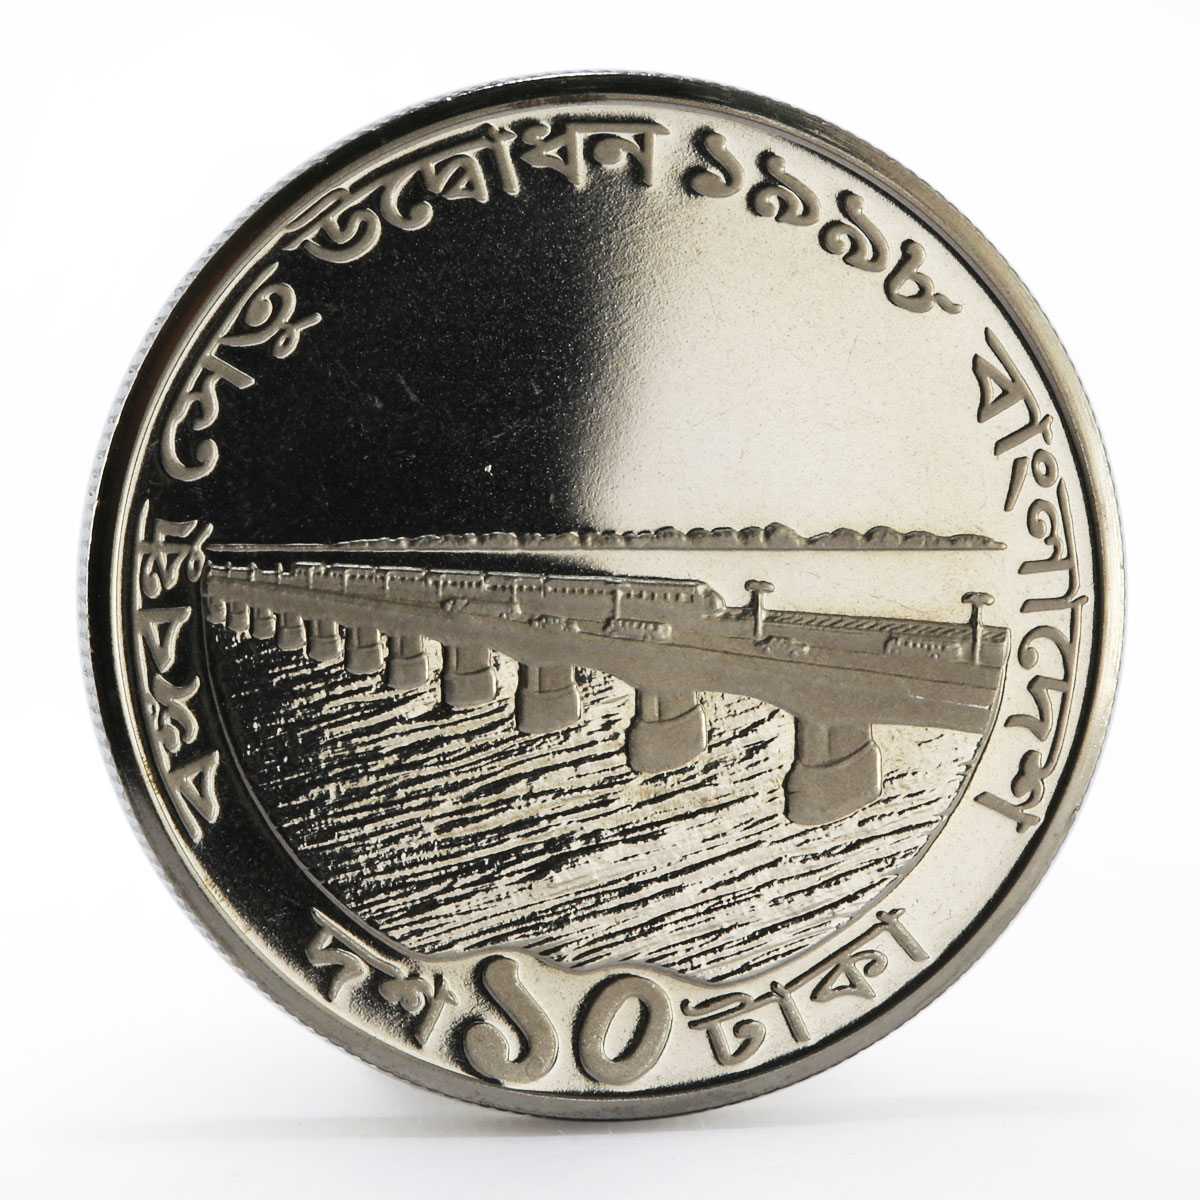 Bangladesh 10 taka Opening of Bangabandhu Jamuna bridge proof nickel coin 1998